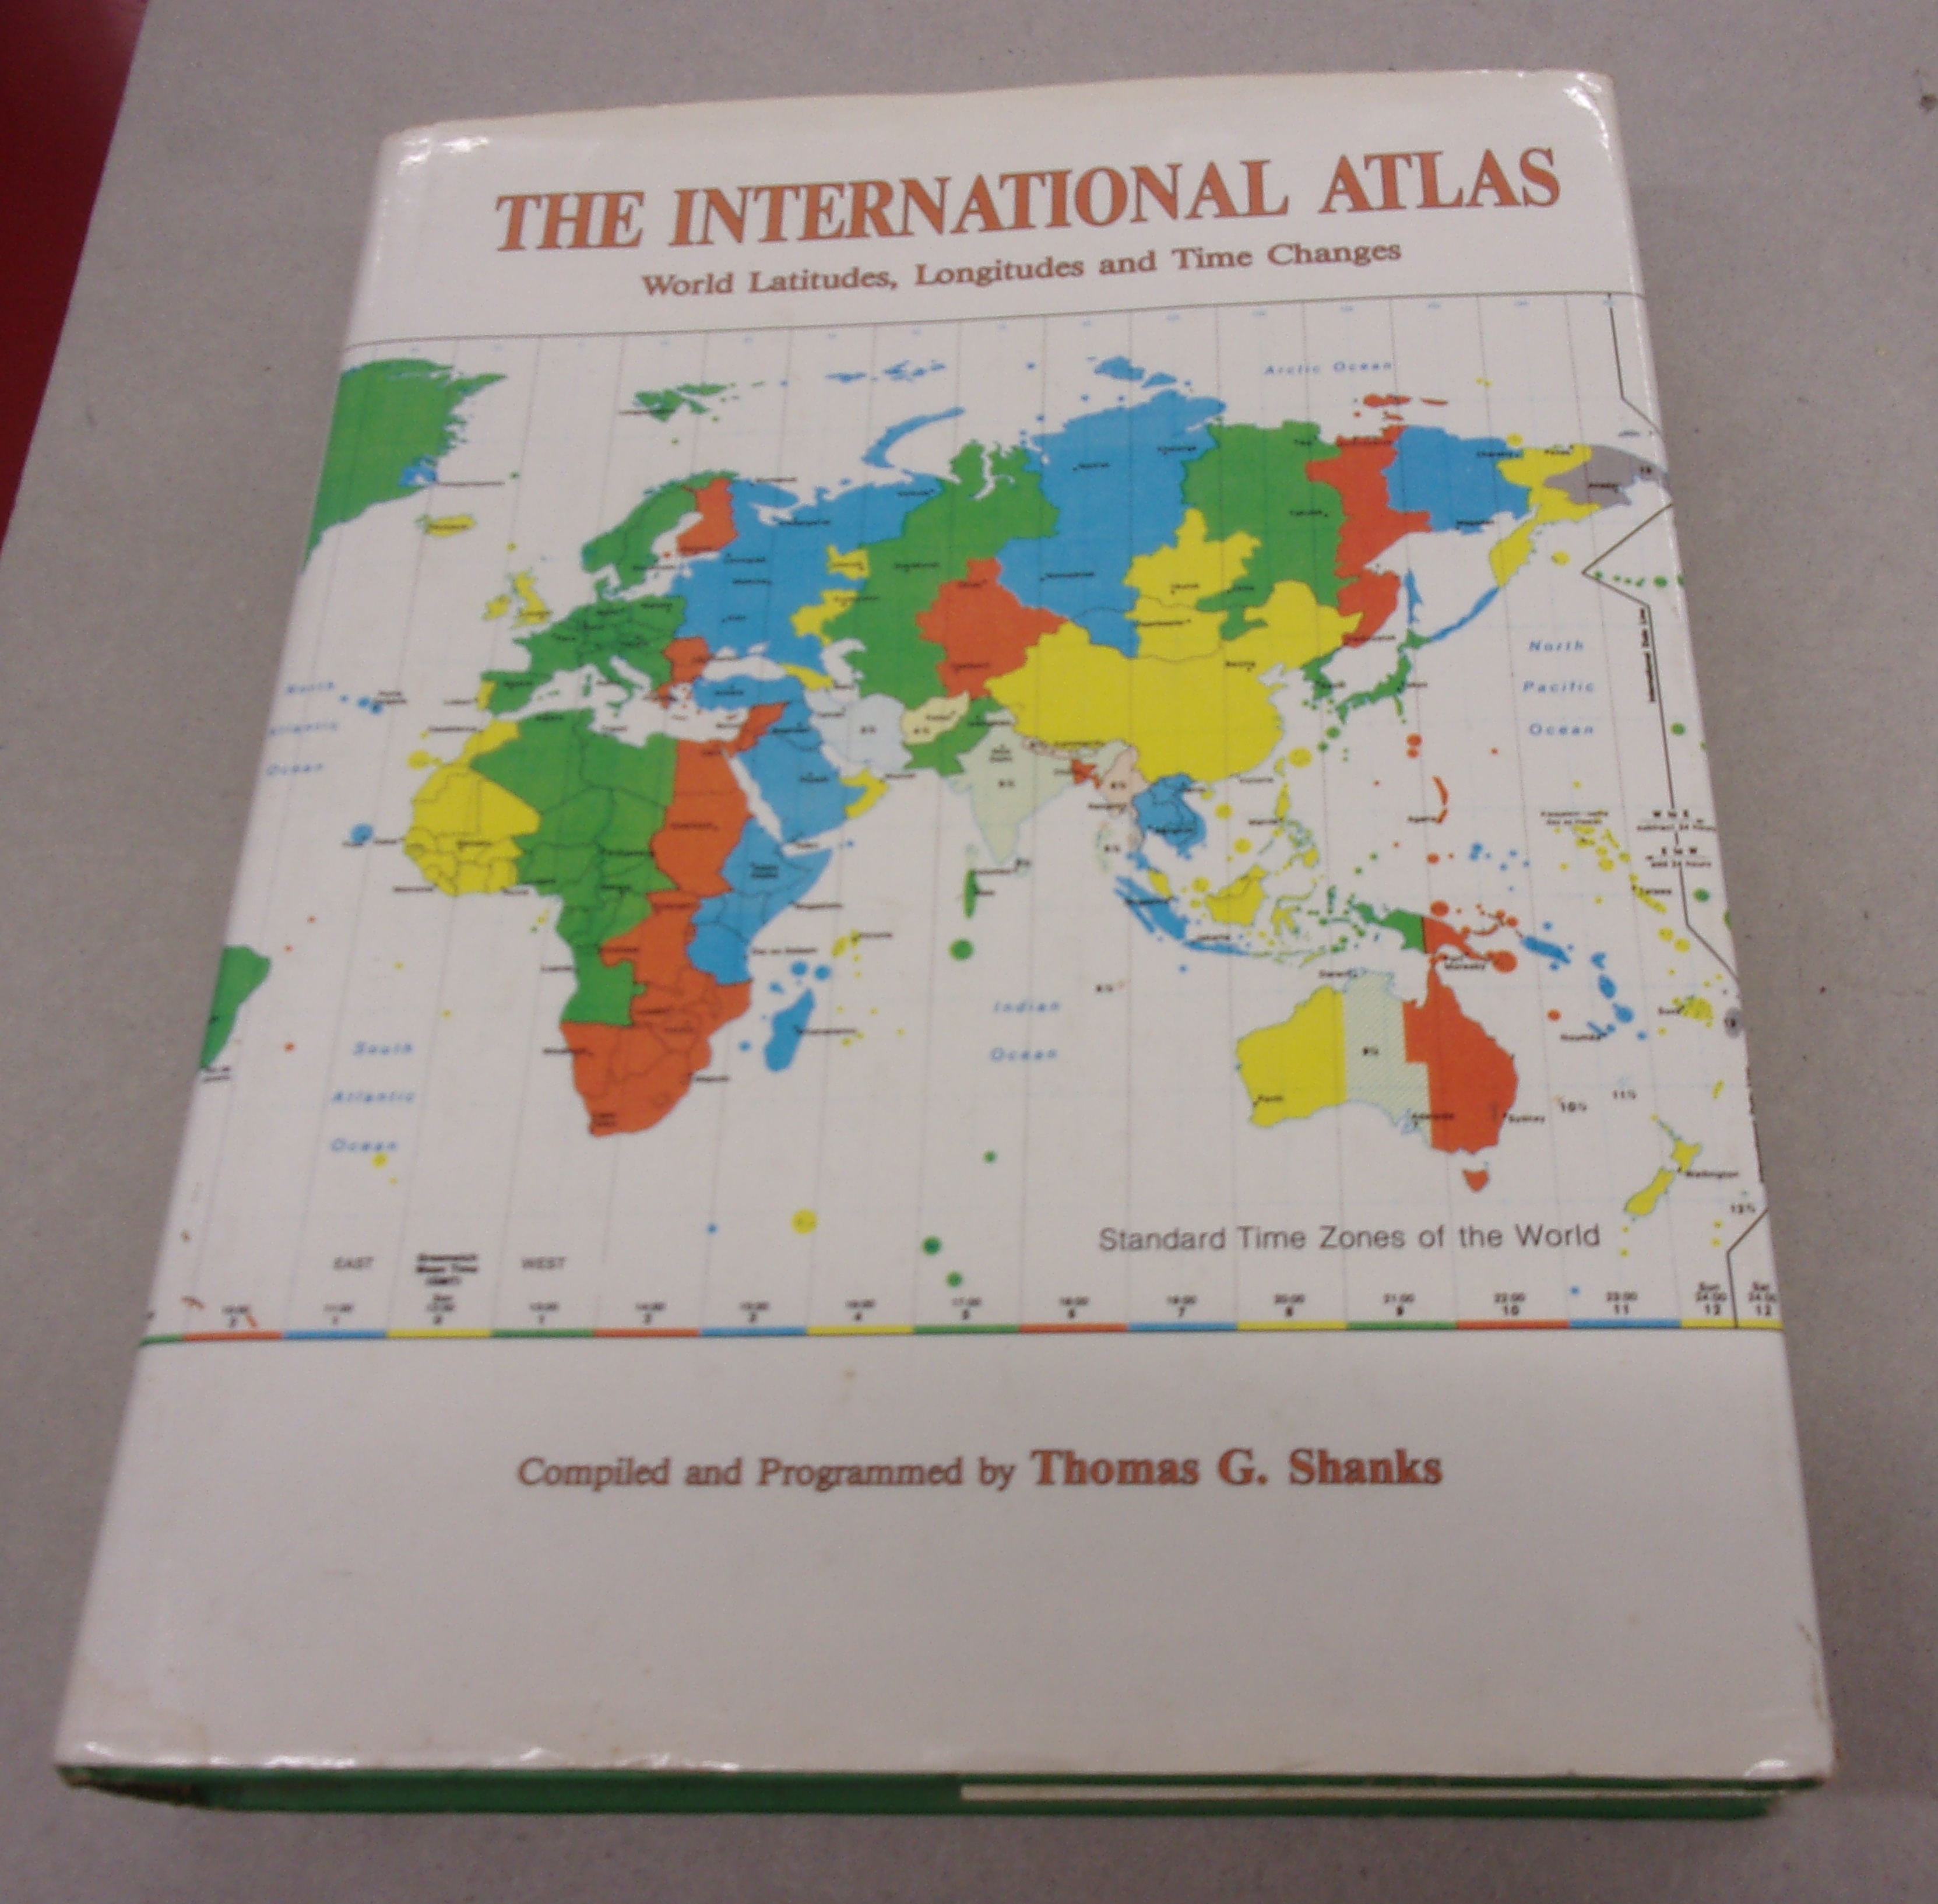 The International Atlas - World Latitudes, Longitudes and Time Changes - Shanks, Thomas G.